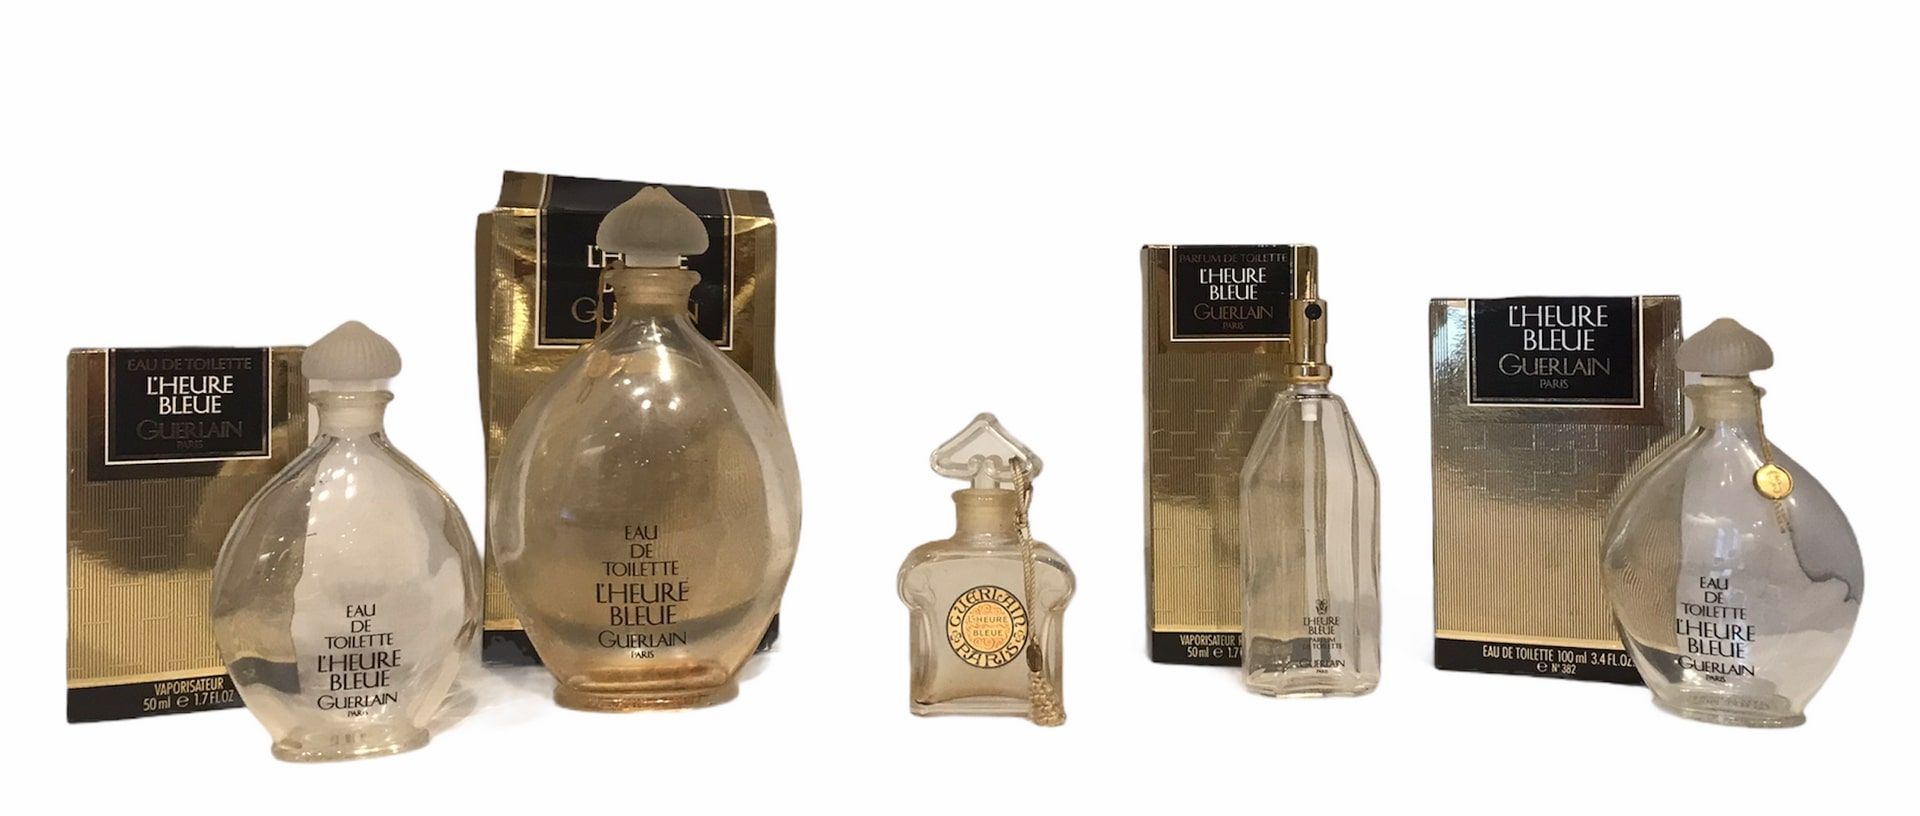 Null 顾尔伦

"L'heure bleue

花露水，三款有包装的香水和一款无盖的香水

但有其原始包装。

玻璃瓶